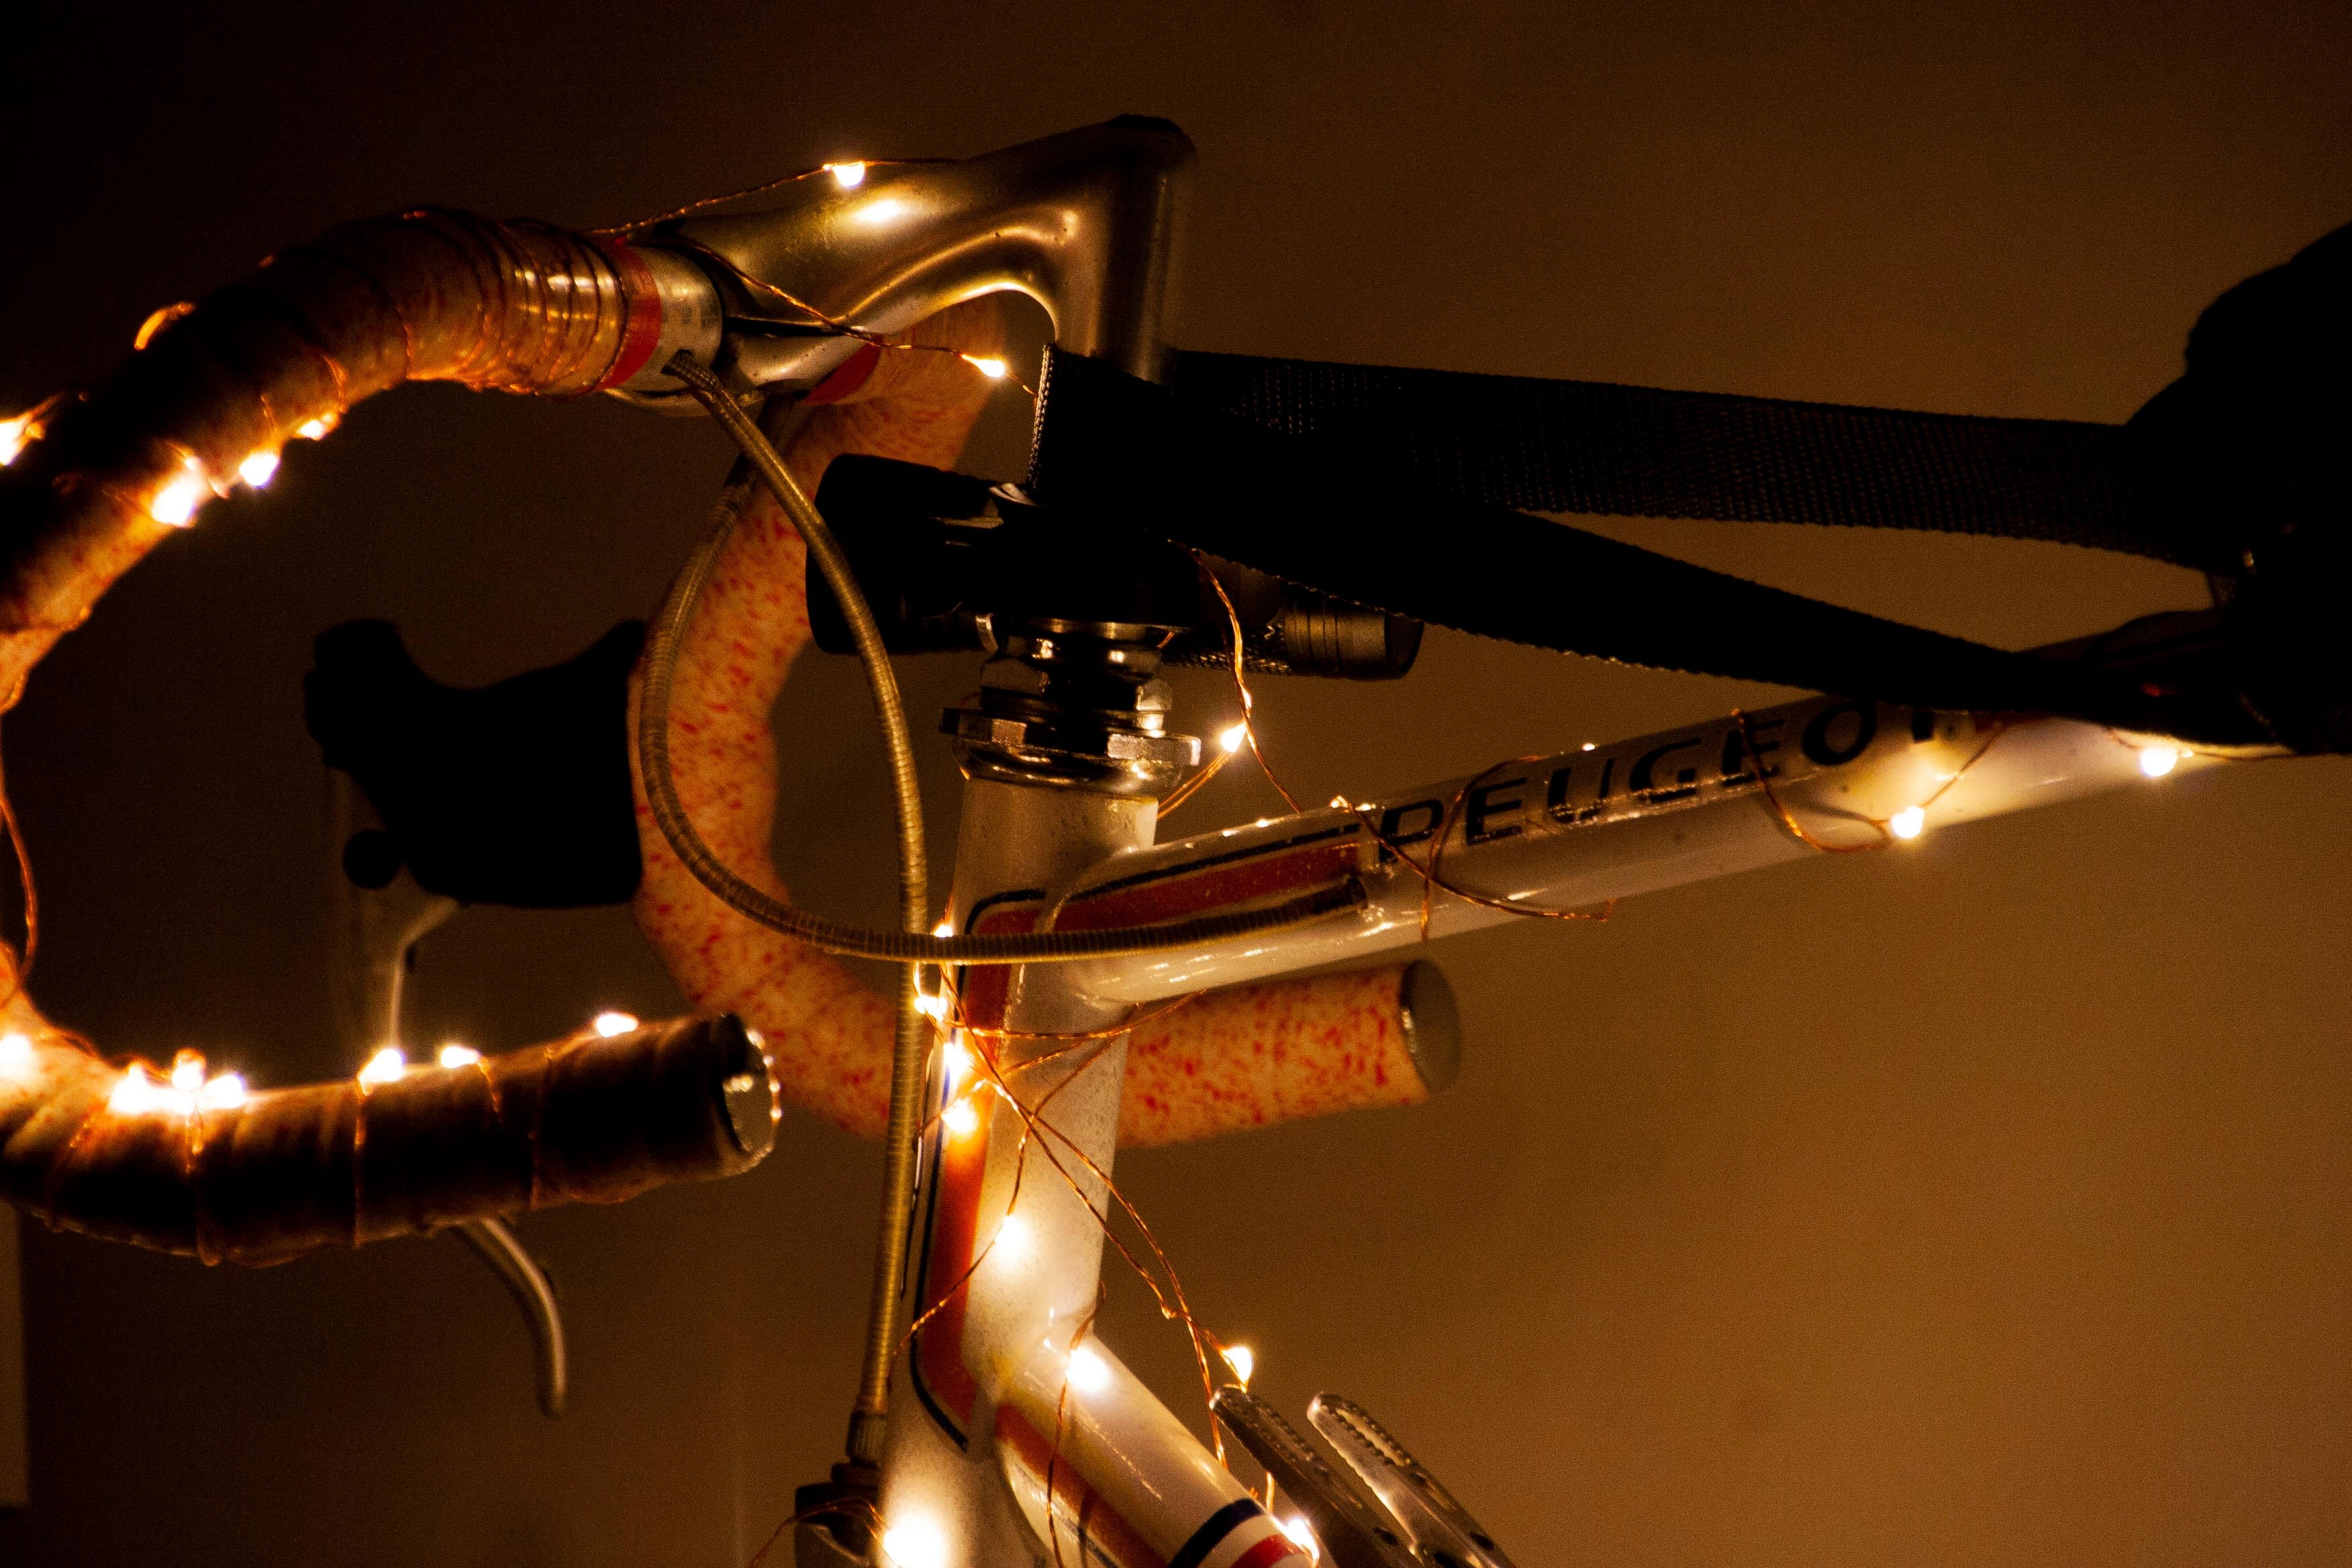 Eine Lichterkette um eine altes an der Wand montiertes Fahrrad gibt nicht nur gemütliche sondern auch moderne Vibes 